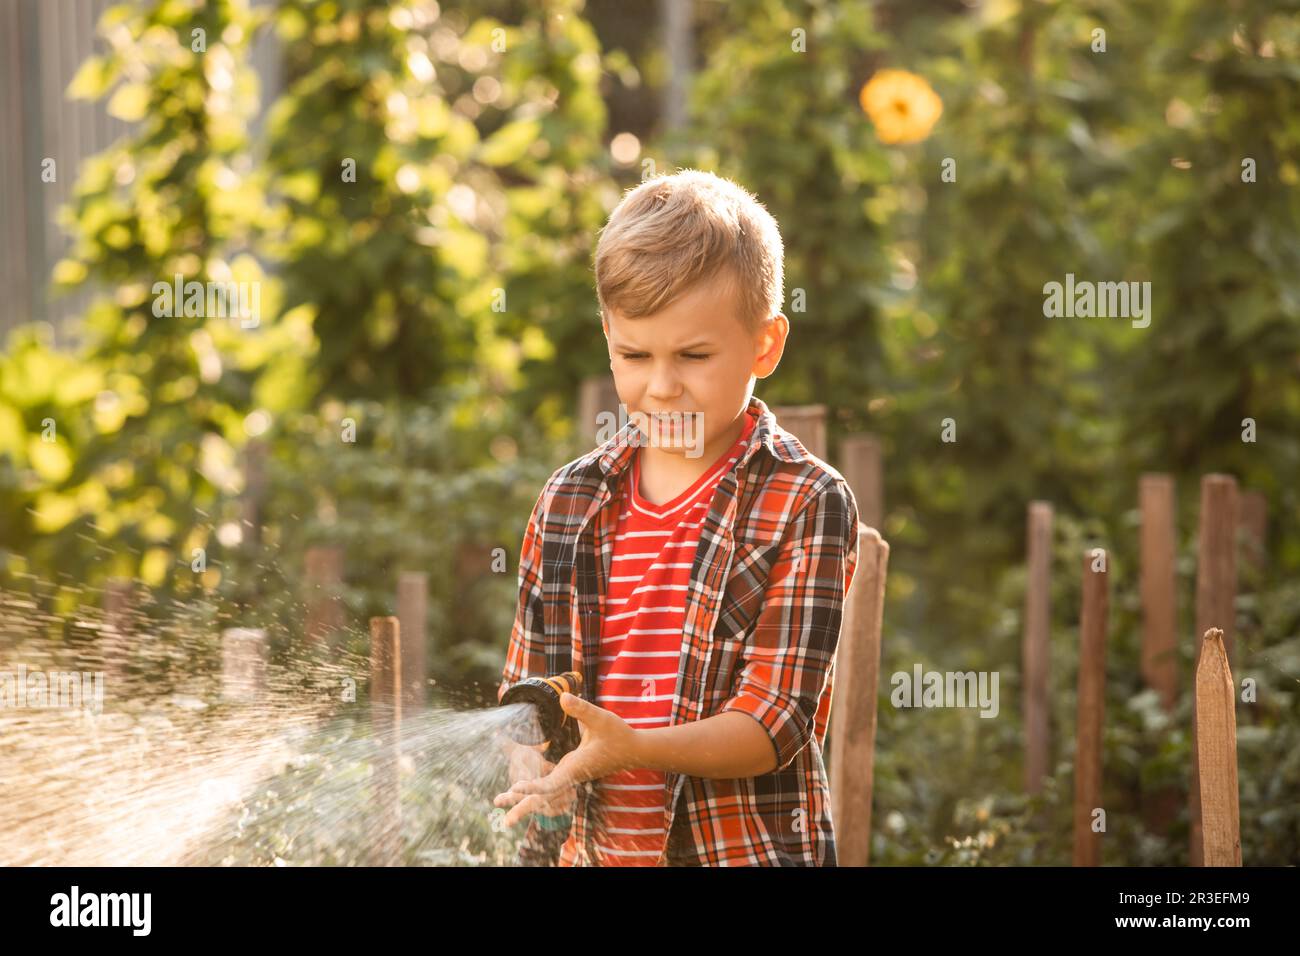 Le garçon arrose le lit de jardin à l'aide d'un tuyau Banque D'Images